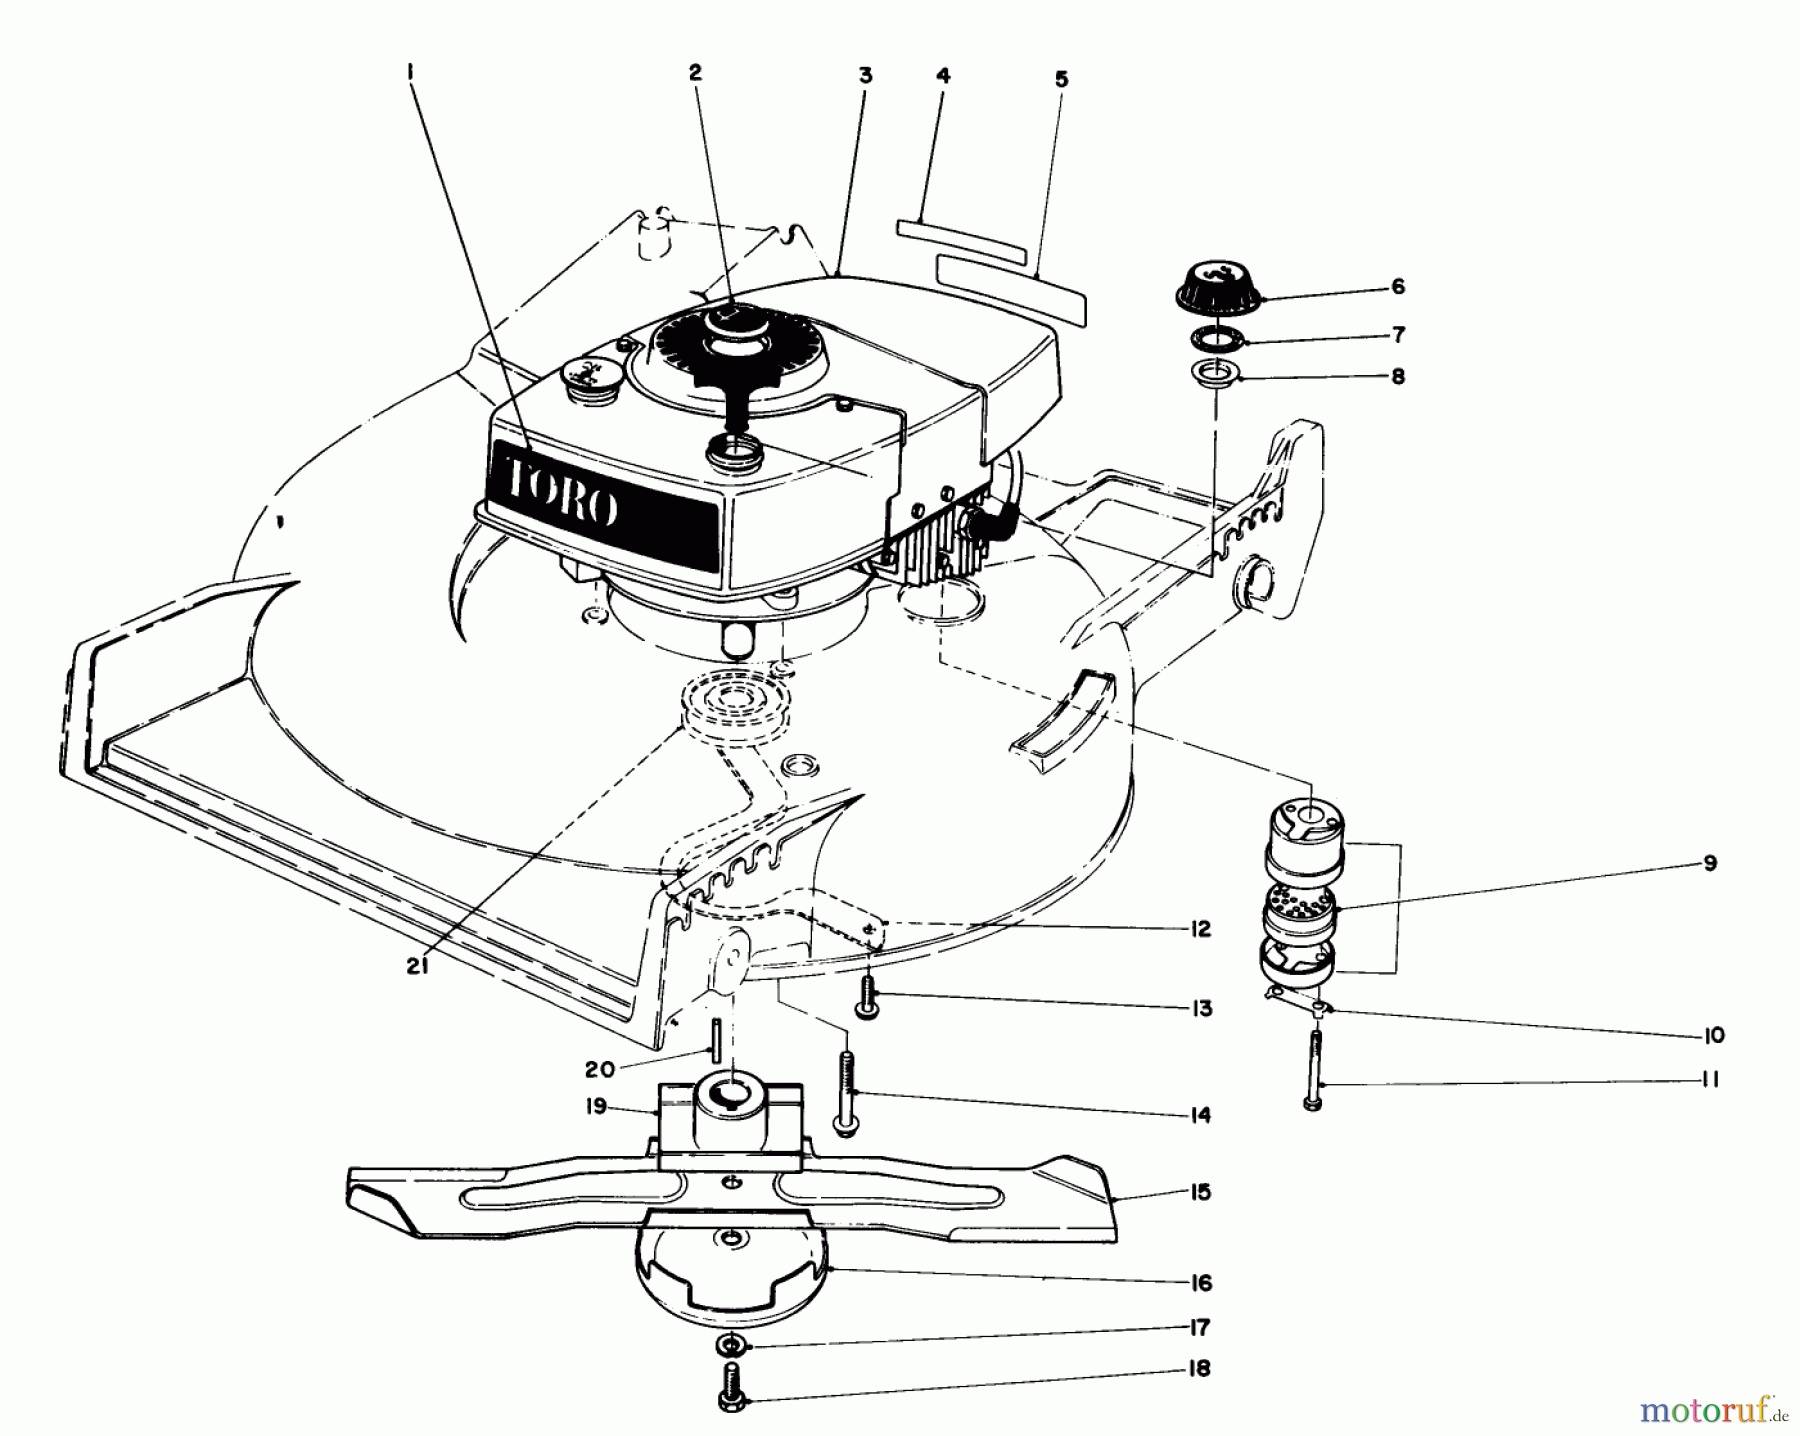  Toro Neu Mowers, Walk-Behind Seite 1 20810 - Toro Lawnmower, 1982 (2000001-2999999) ENGINE ASSEMBLY